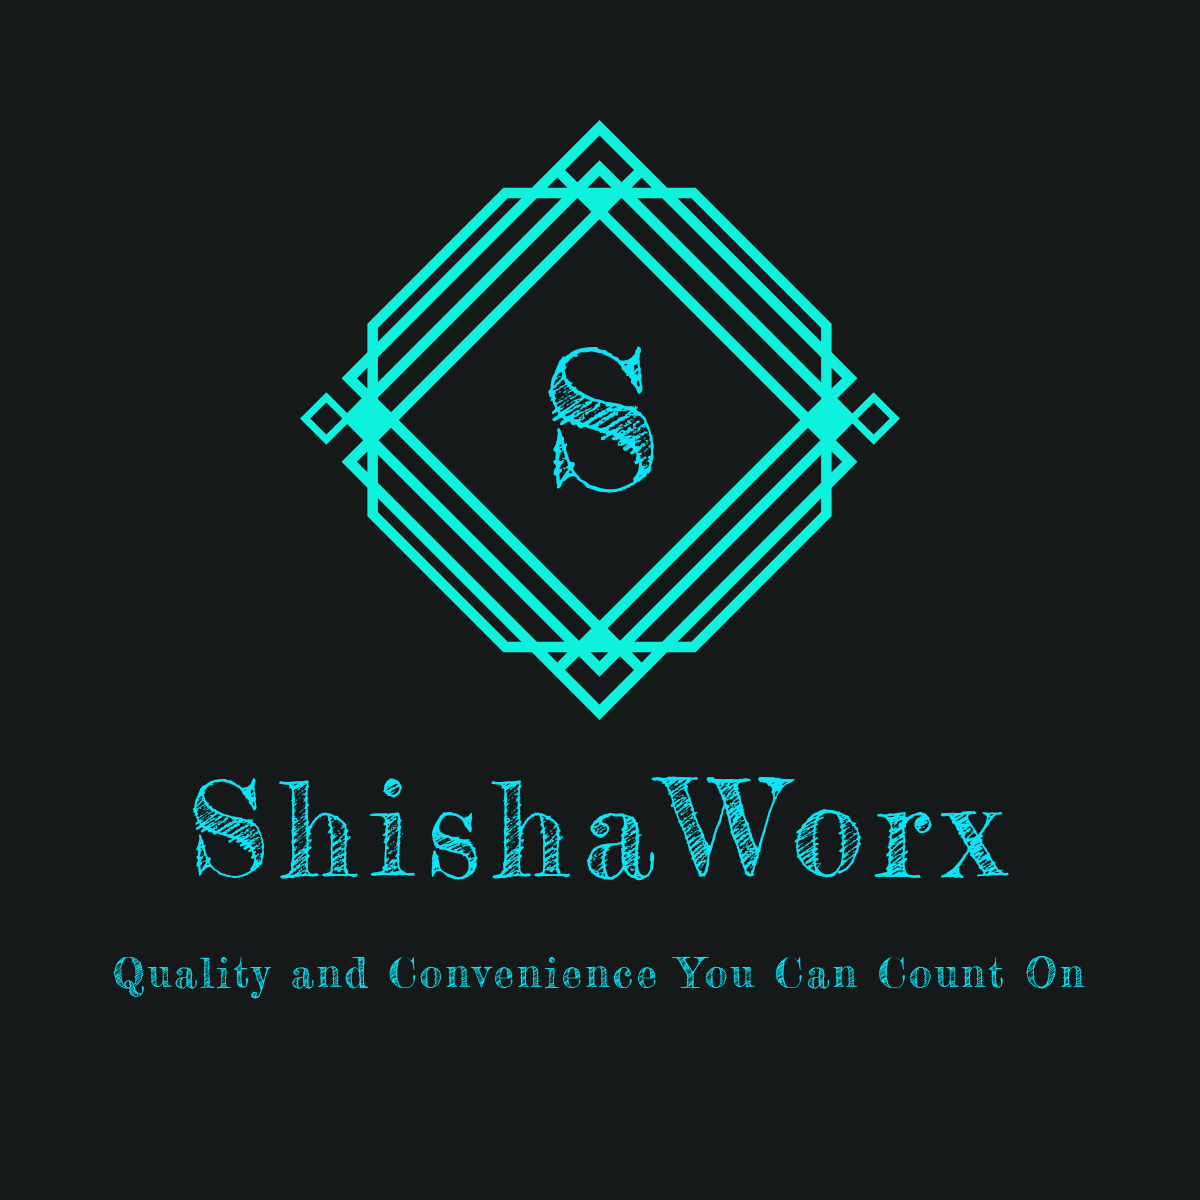 Shishaworx – ShishaWorx